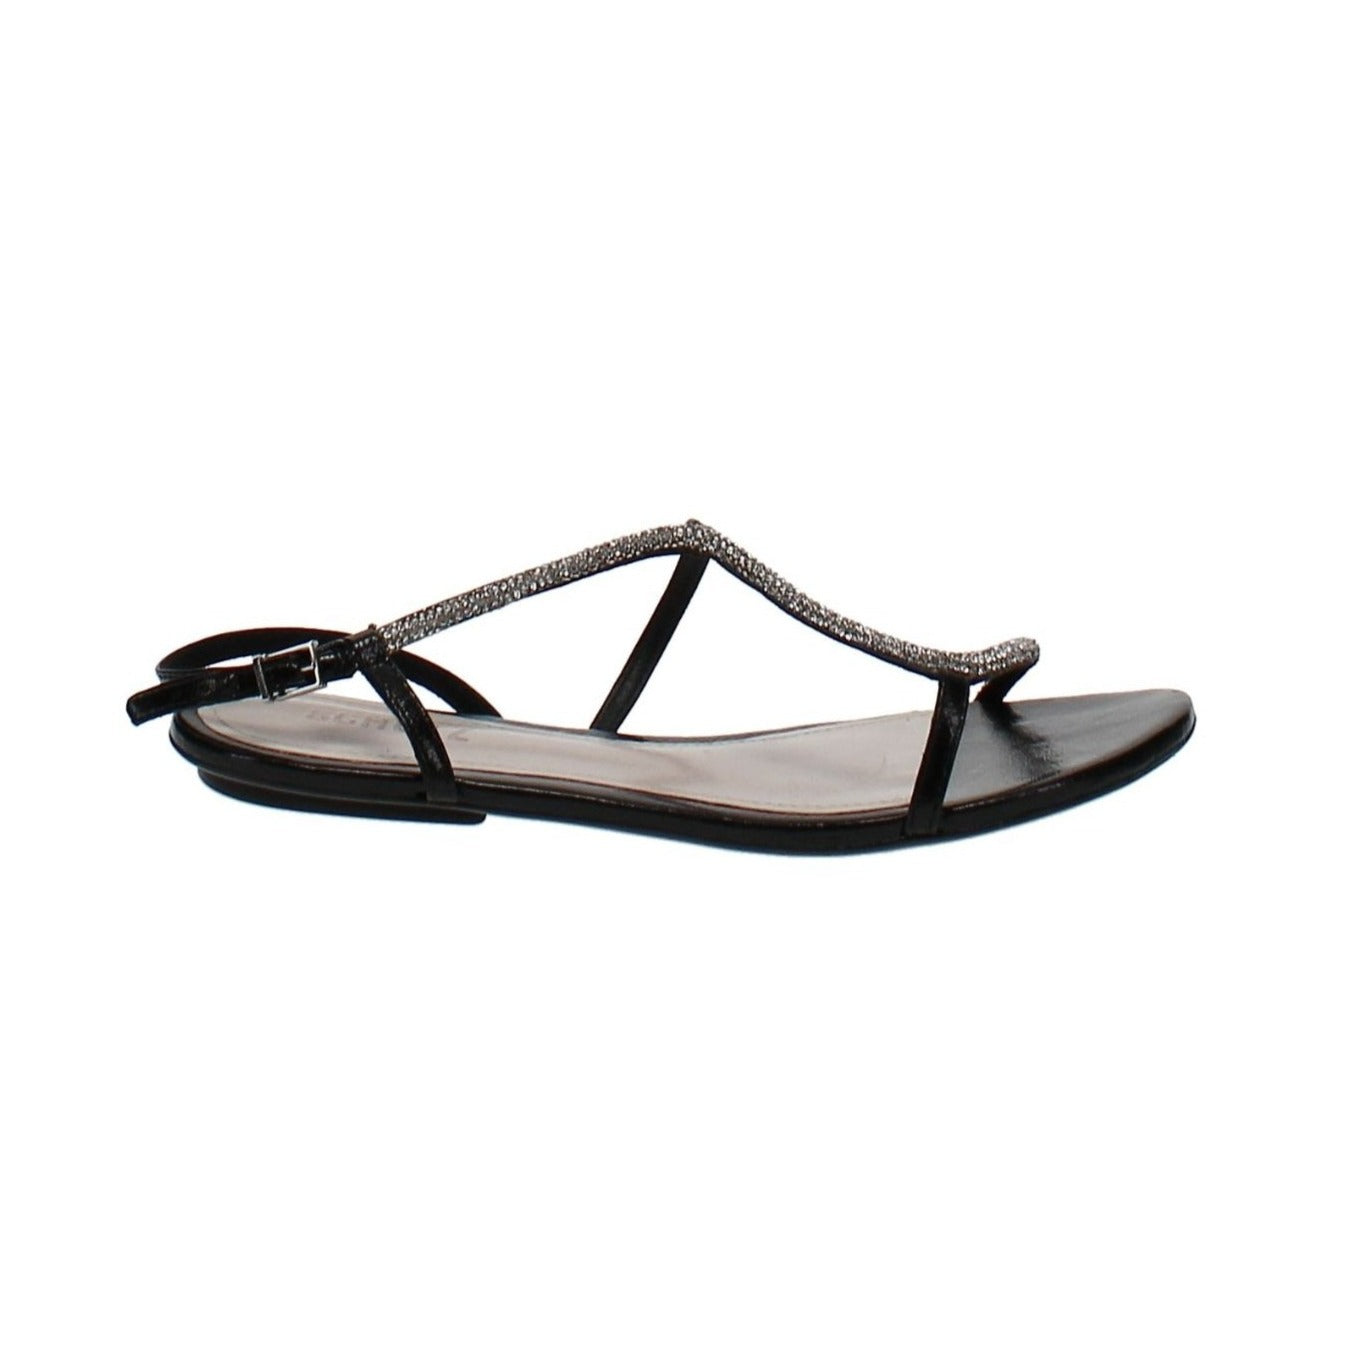 Schutz | Georgia Lee Embellished Slingback Sandals | Black | Size 6.5